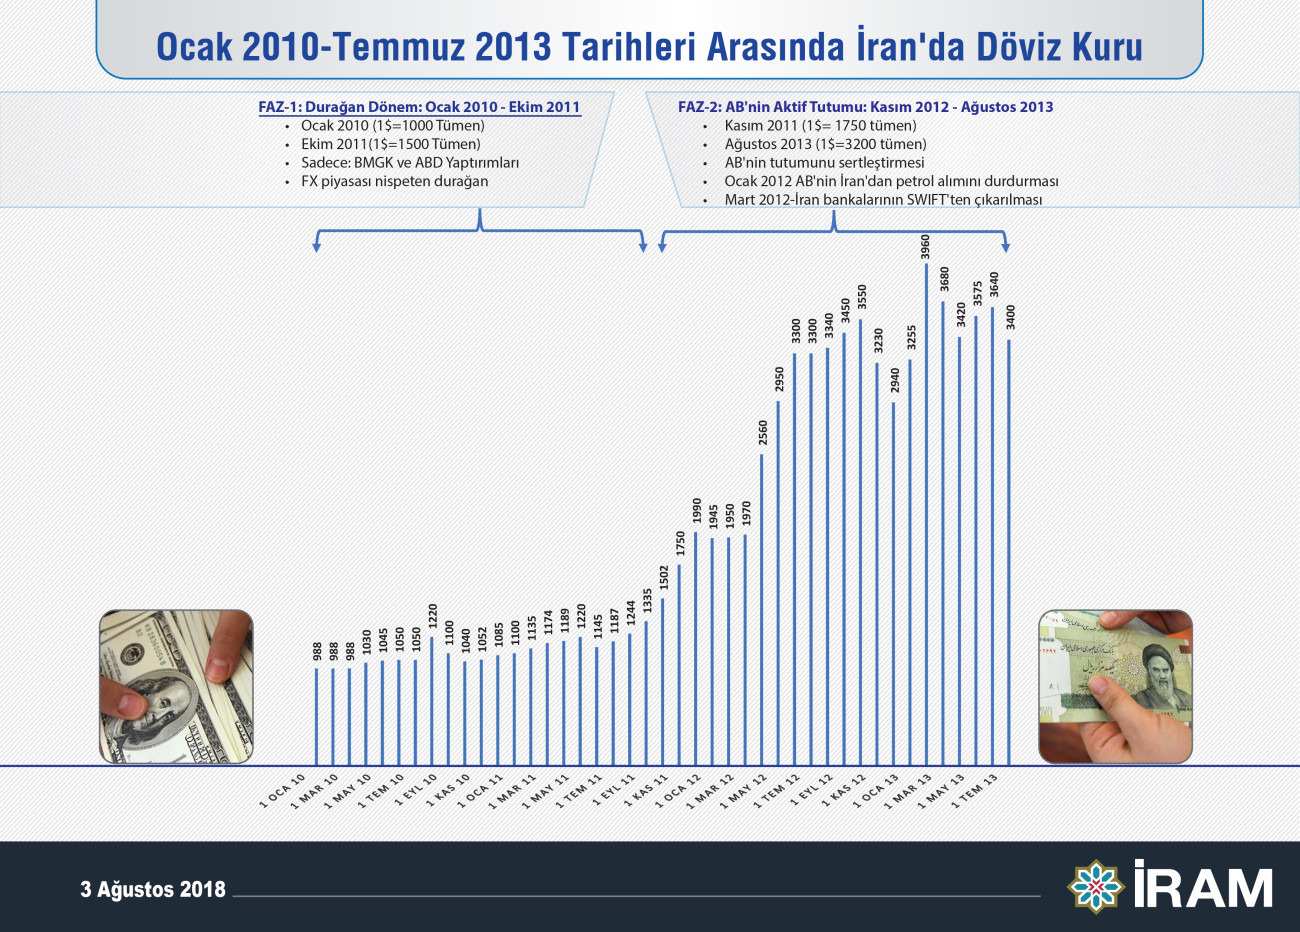 Ocak 2010 - Temmuz 2013 tarihleri arasında İran'da döviz kuru